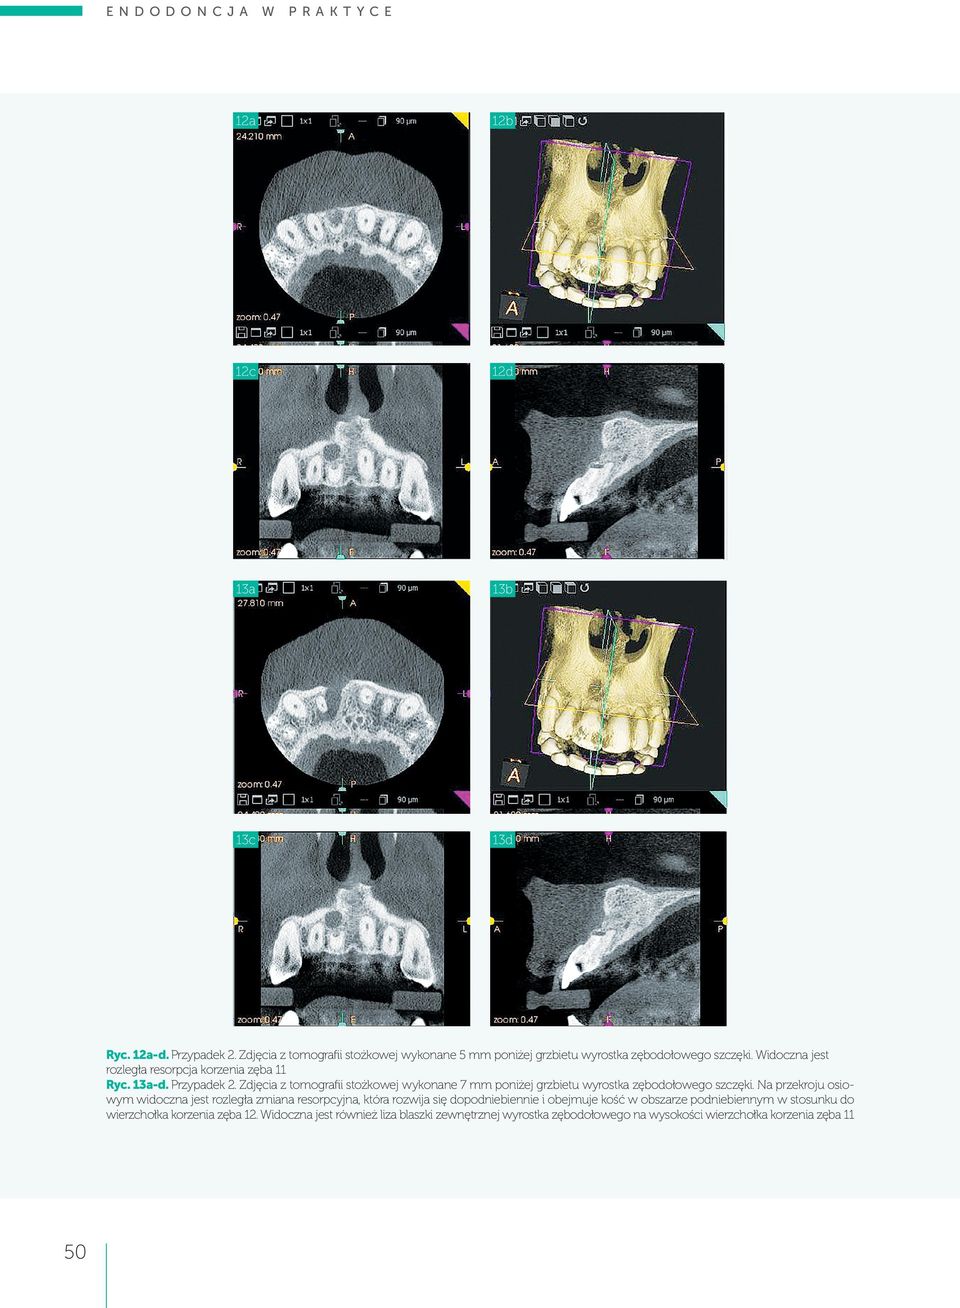 Przypadek 2. Zdjęcia z tomografii stożkowej wykonane 7 mm poniżej grzbietu wyrostka zębodołowego szczęki.